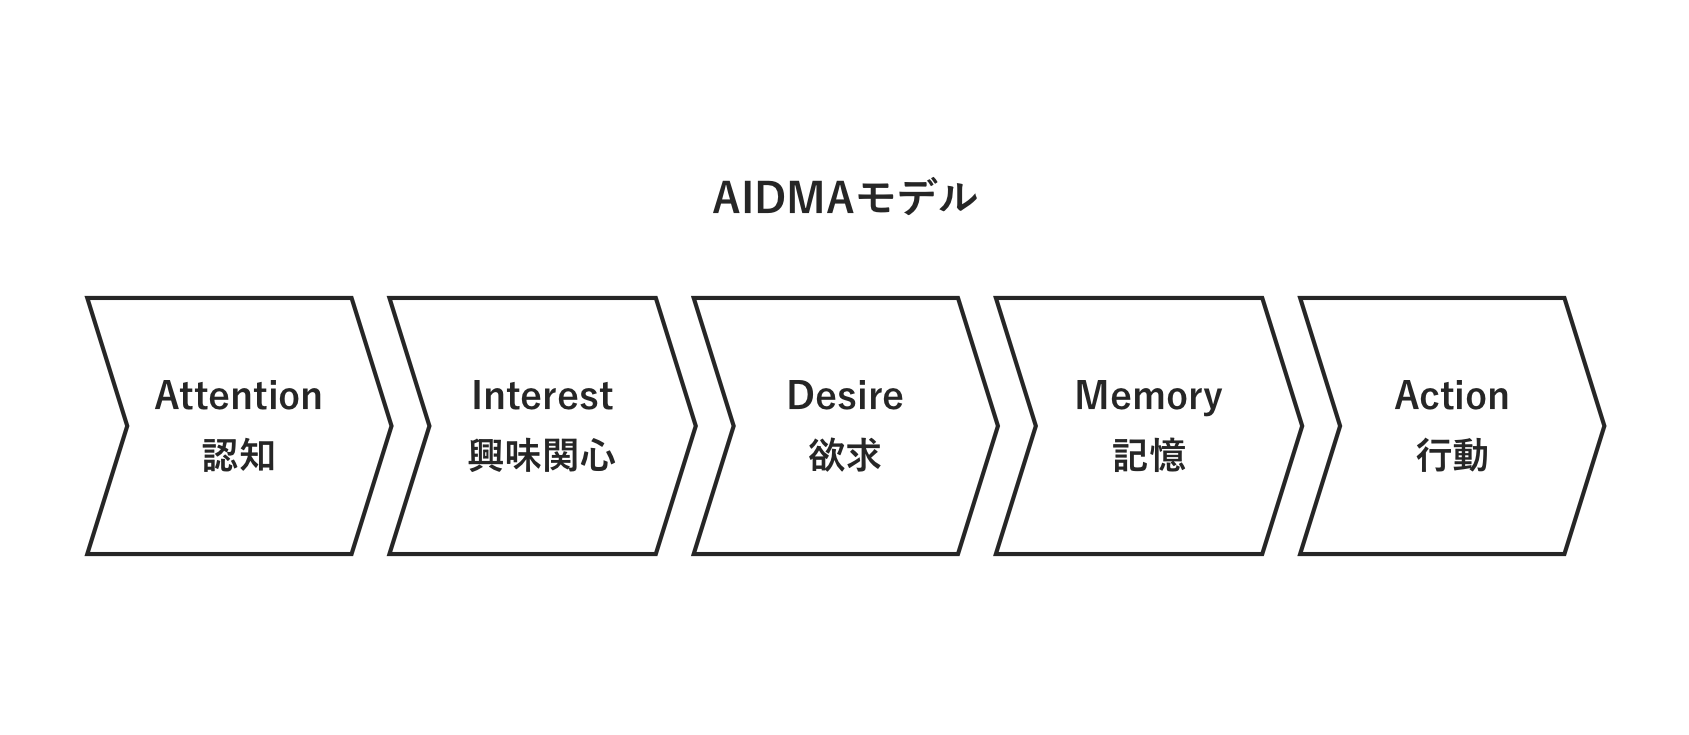 AIDMAとは？顧客の購買行動モデルに沿ってコミュニケーションを設計する【フレームワーク】